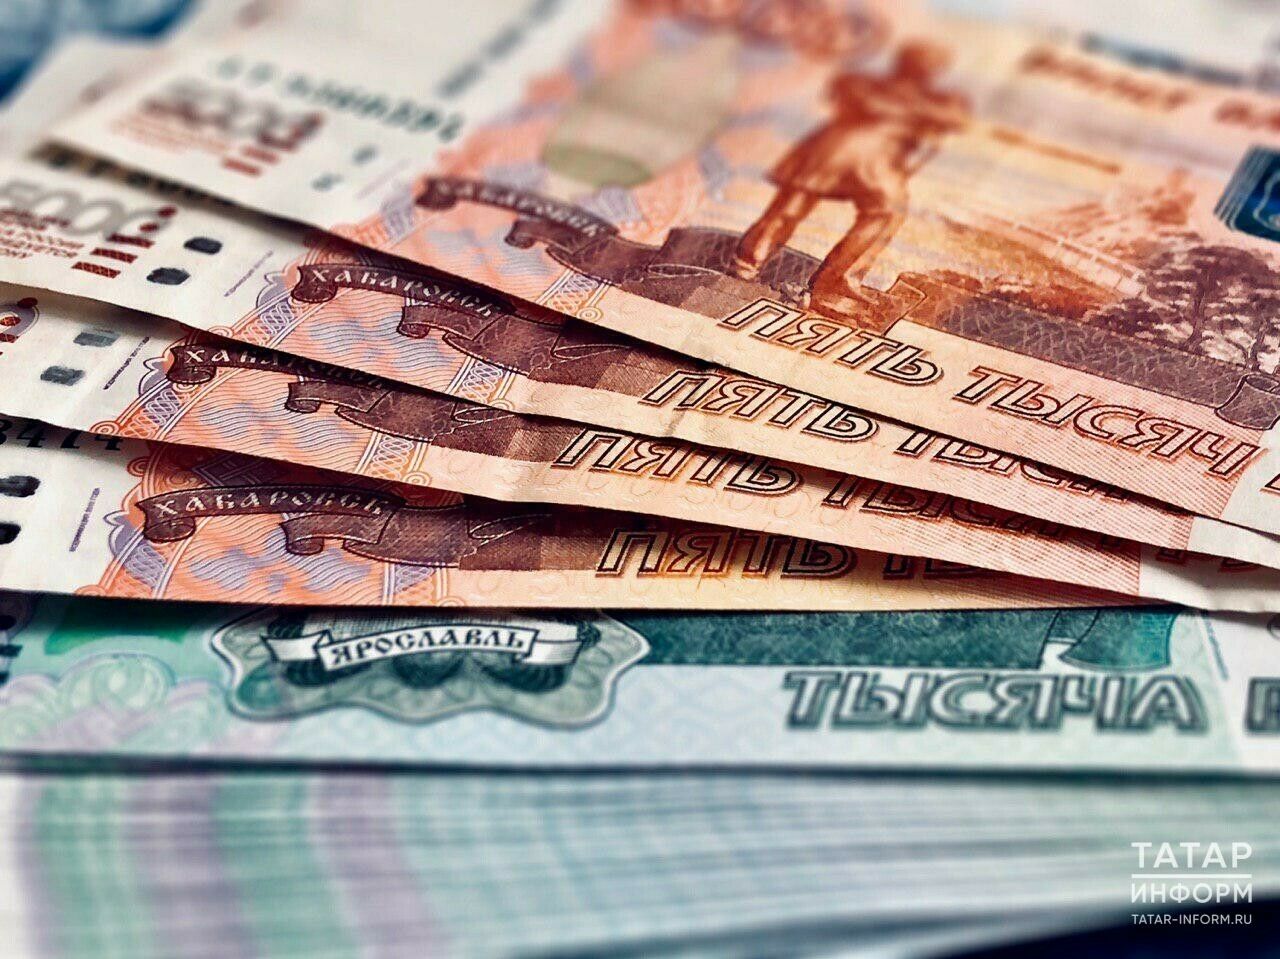 Челнинская ИФНС выявила не уплаченные налоги на 47 миллионов рублей